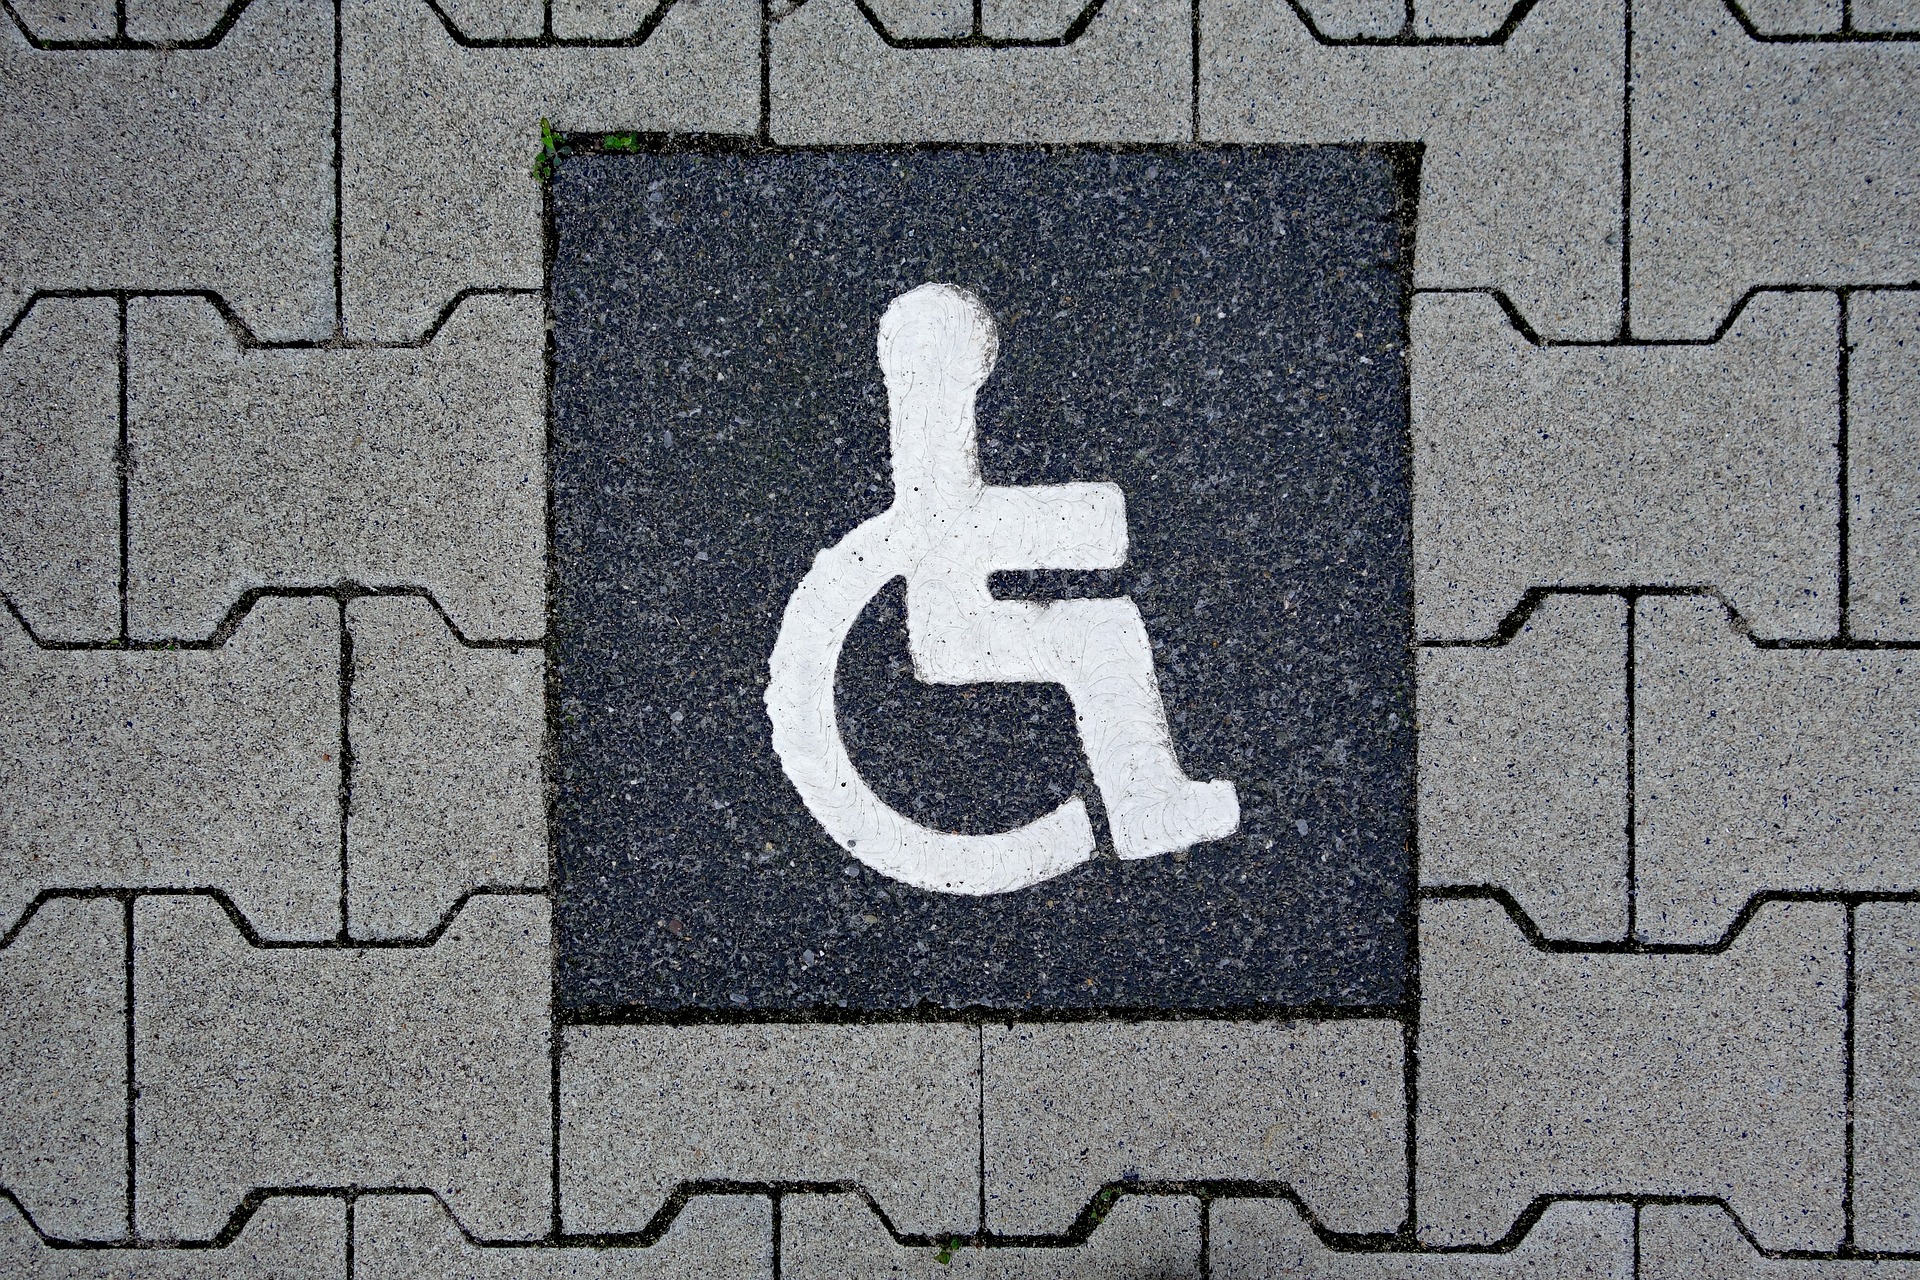 Ψηφιακή Κάρτα Αναπηρίας: Από σήμερα αποθηκεύεται στο κινητό – Πώς λειτουργεί